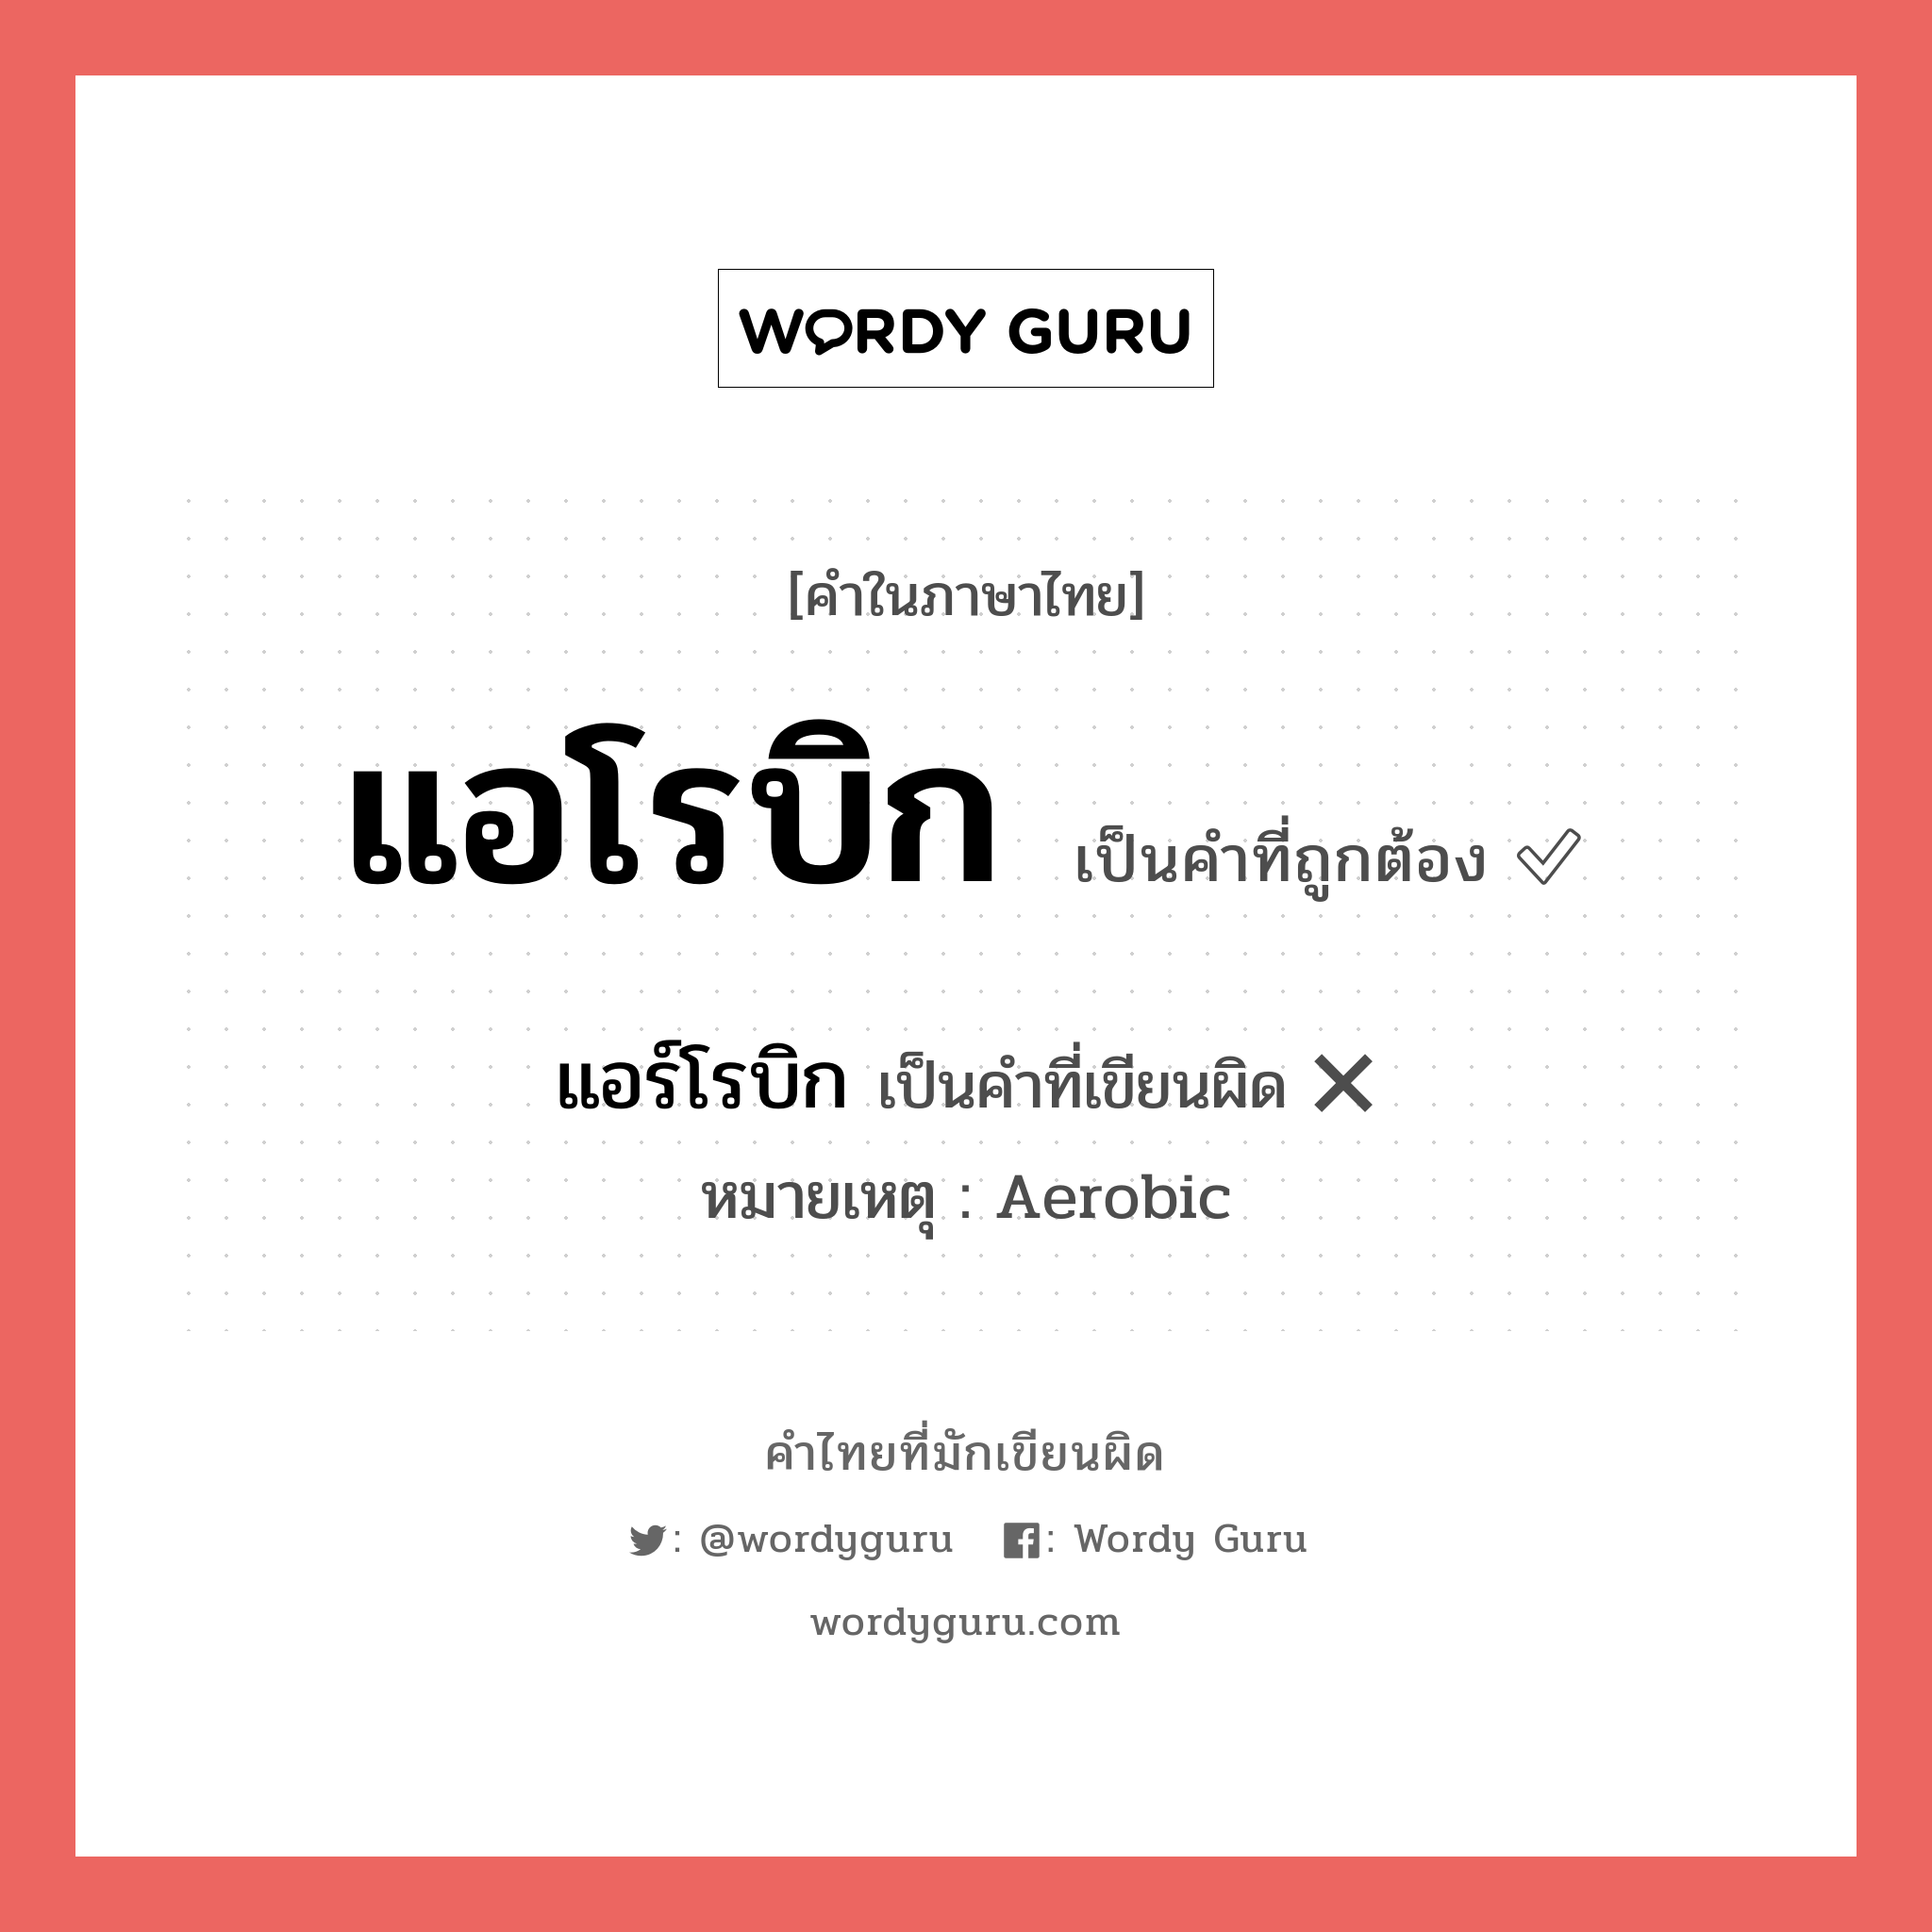 แอโรบิก หรือ แอร์โรบิก เขียนยังไง? คำไหนเขียนถูก?, คำในภาษาไทยที่มักเขียนผิด แอโรบิก คำที่ผิด ❌ แอร์โรบิก หมายเหตุ Aerobic